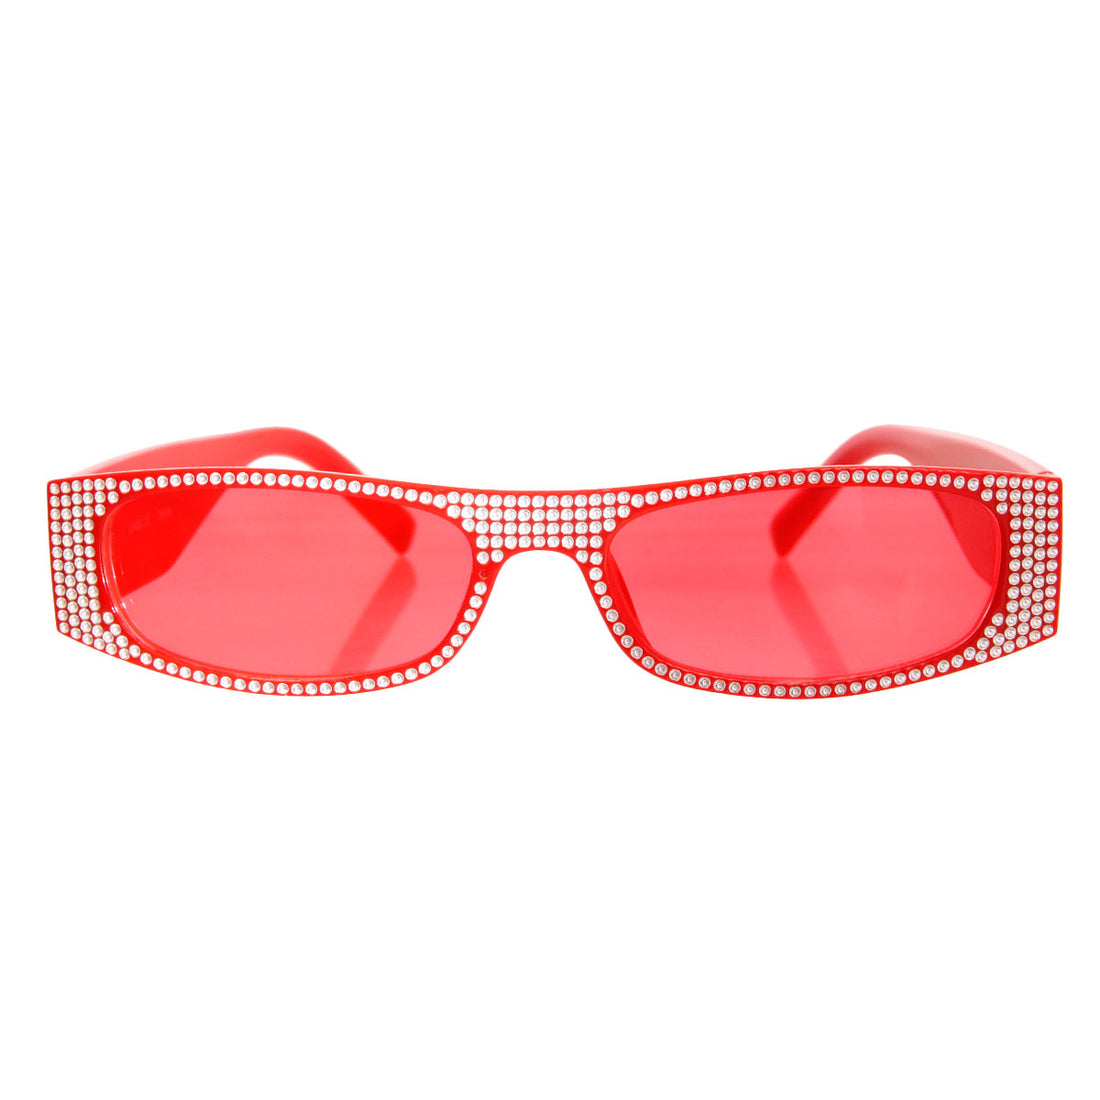 Red Narrow Polka Dot Designer Inspired Sunglasses